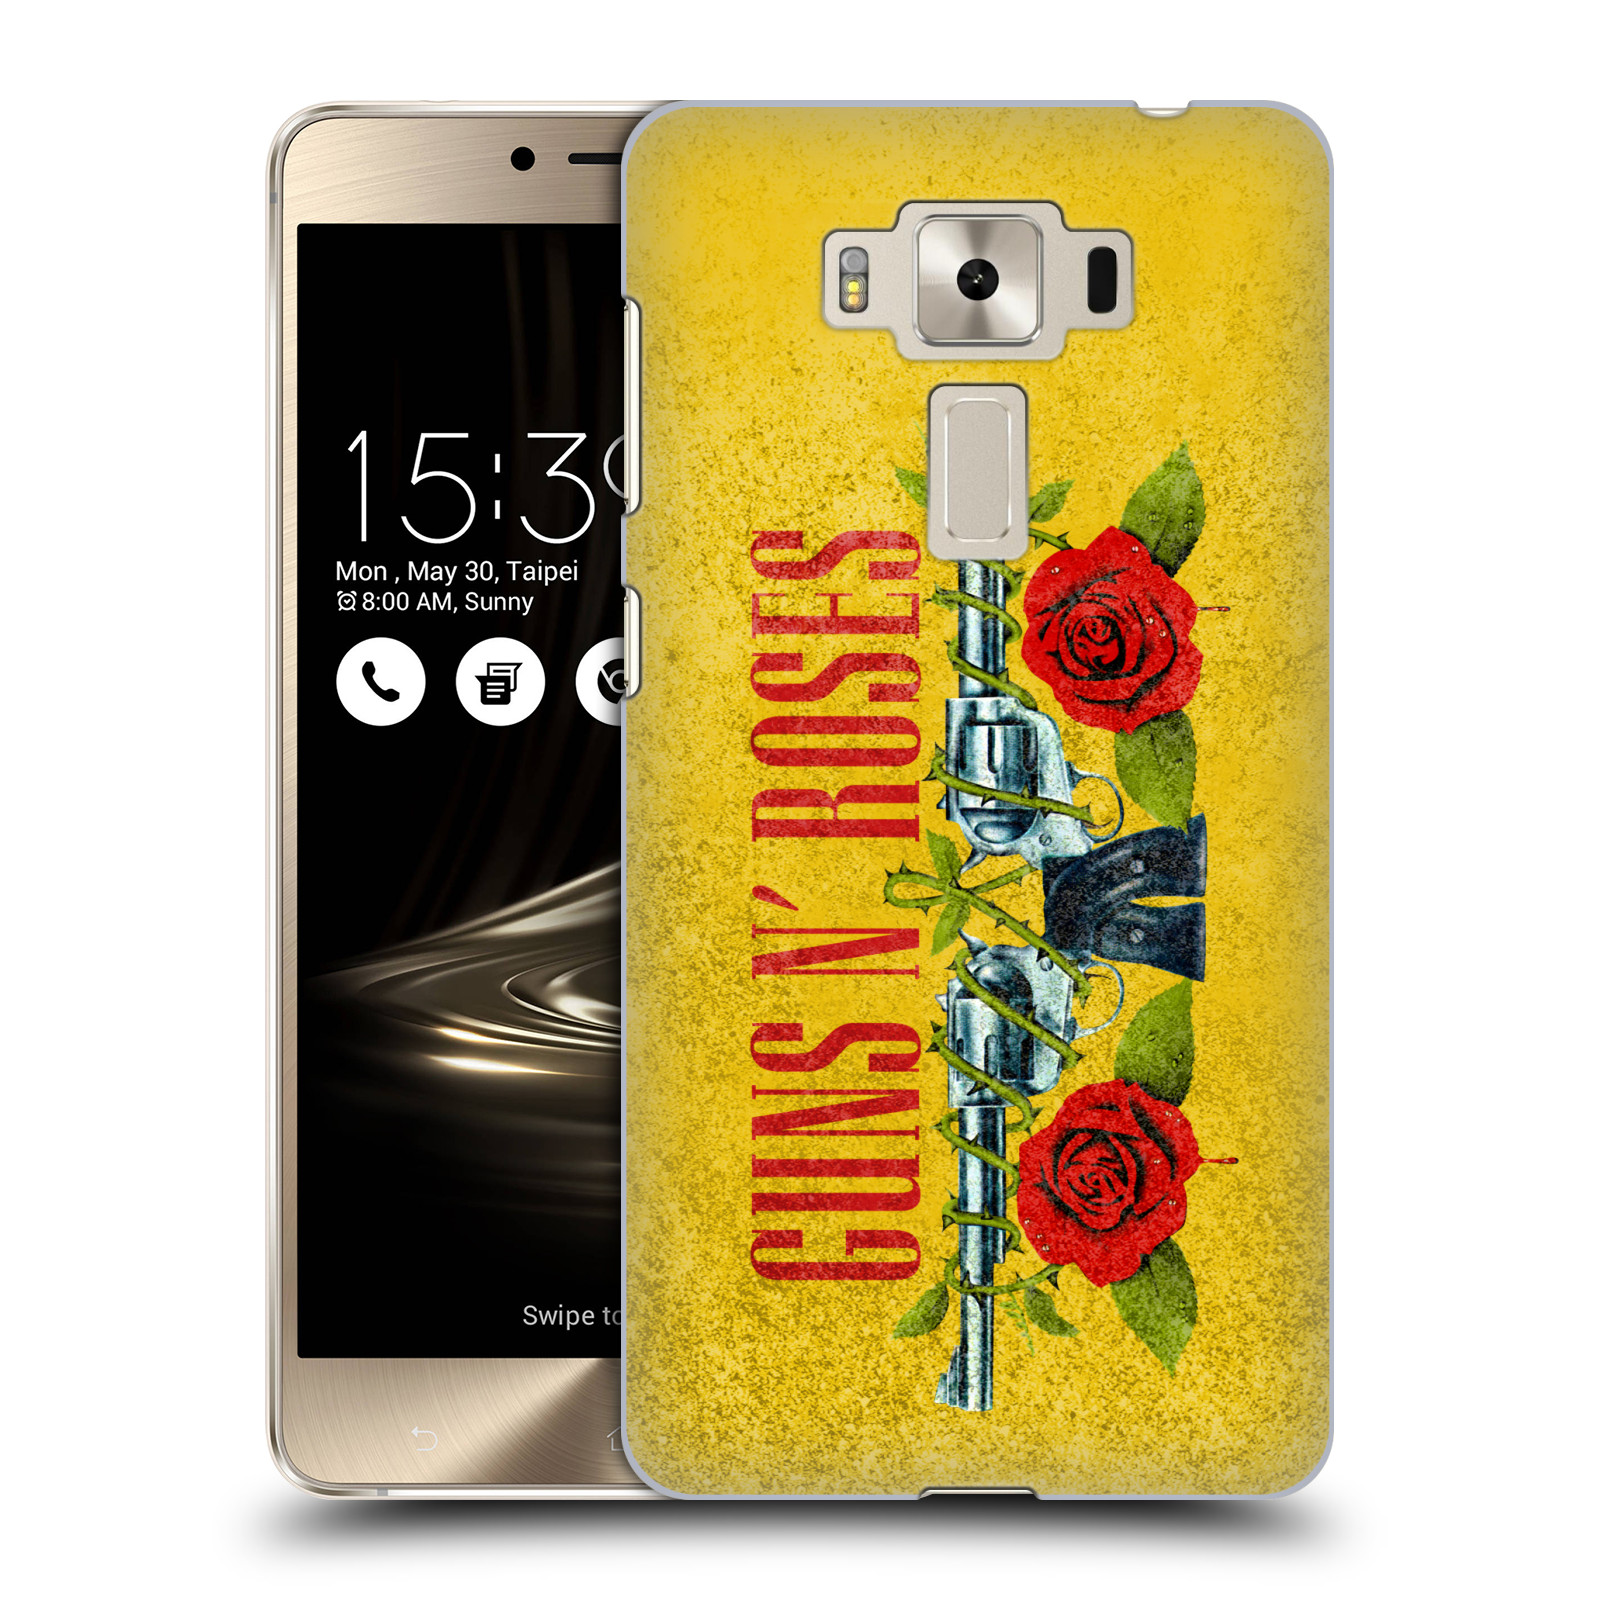 HEAD CASE plastový obal na mobil Asus Zenfone 3 DELUXE ZS550KL hudební skupina Guns N Roses pistole a růže žluté pozadí